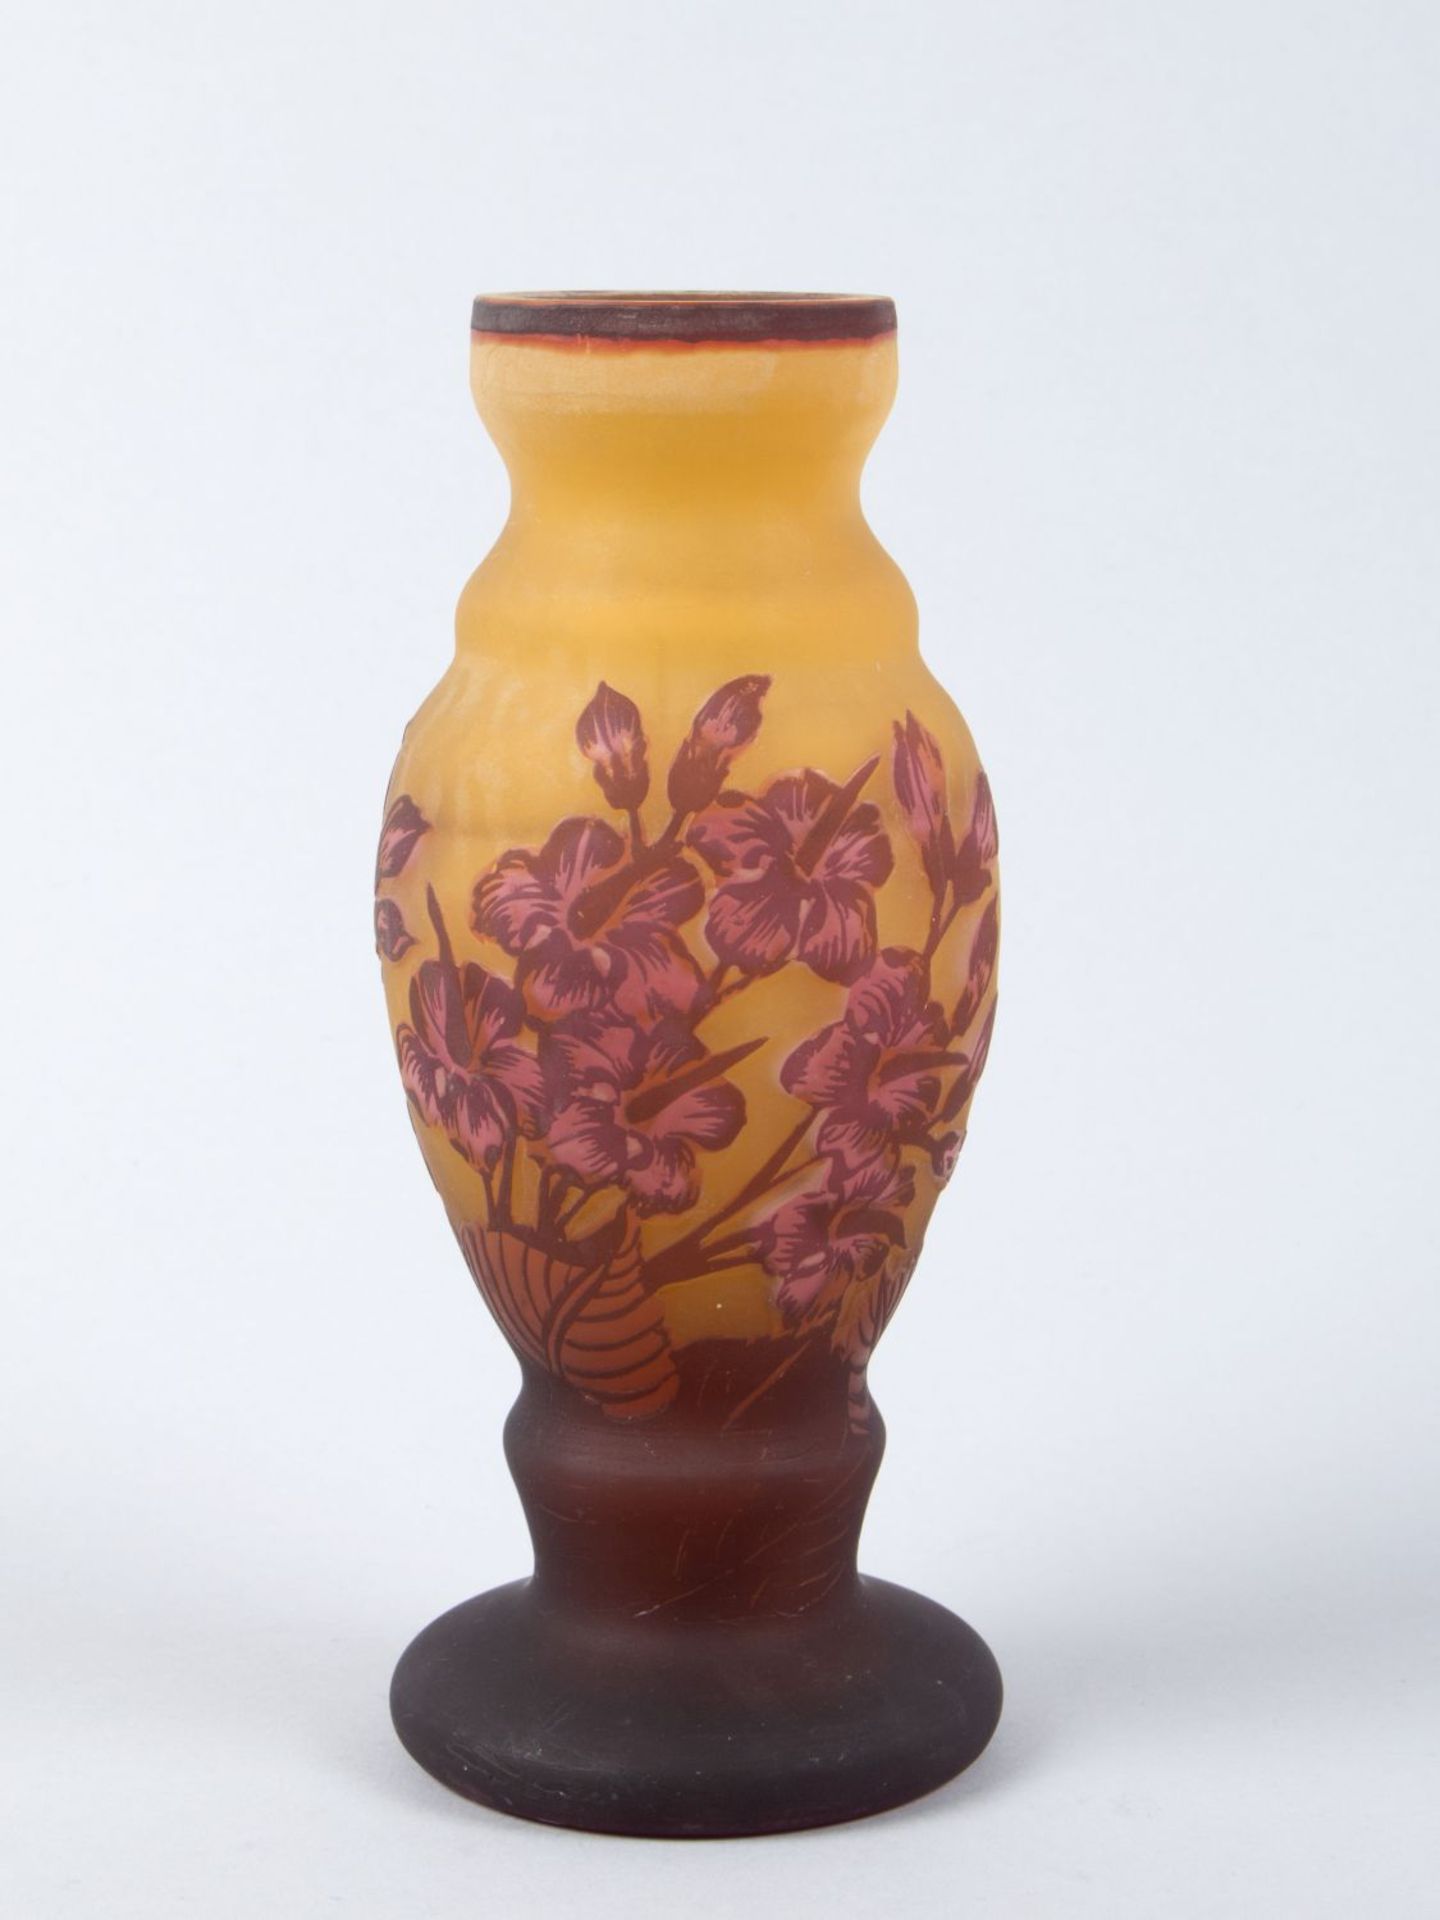 Kleine Jugendstil-VaseFarbloses Glas, orange unterfangen. Überfang in Braunrot. Floraler Dekor. H.